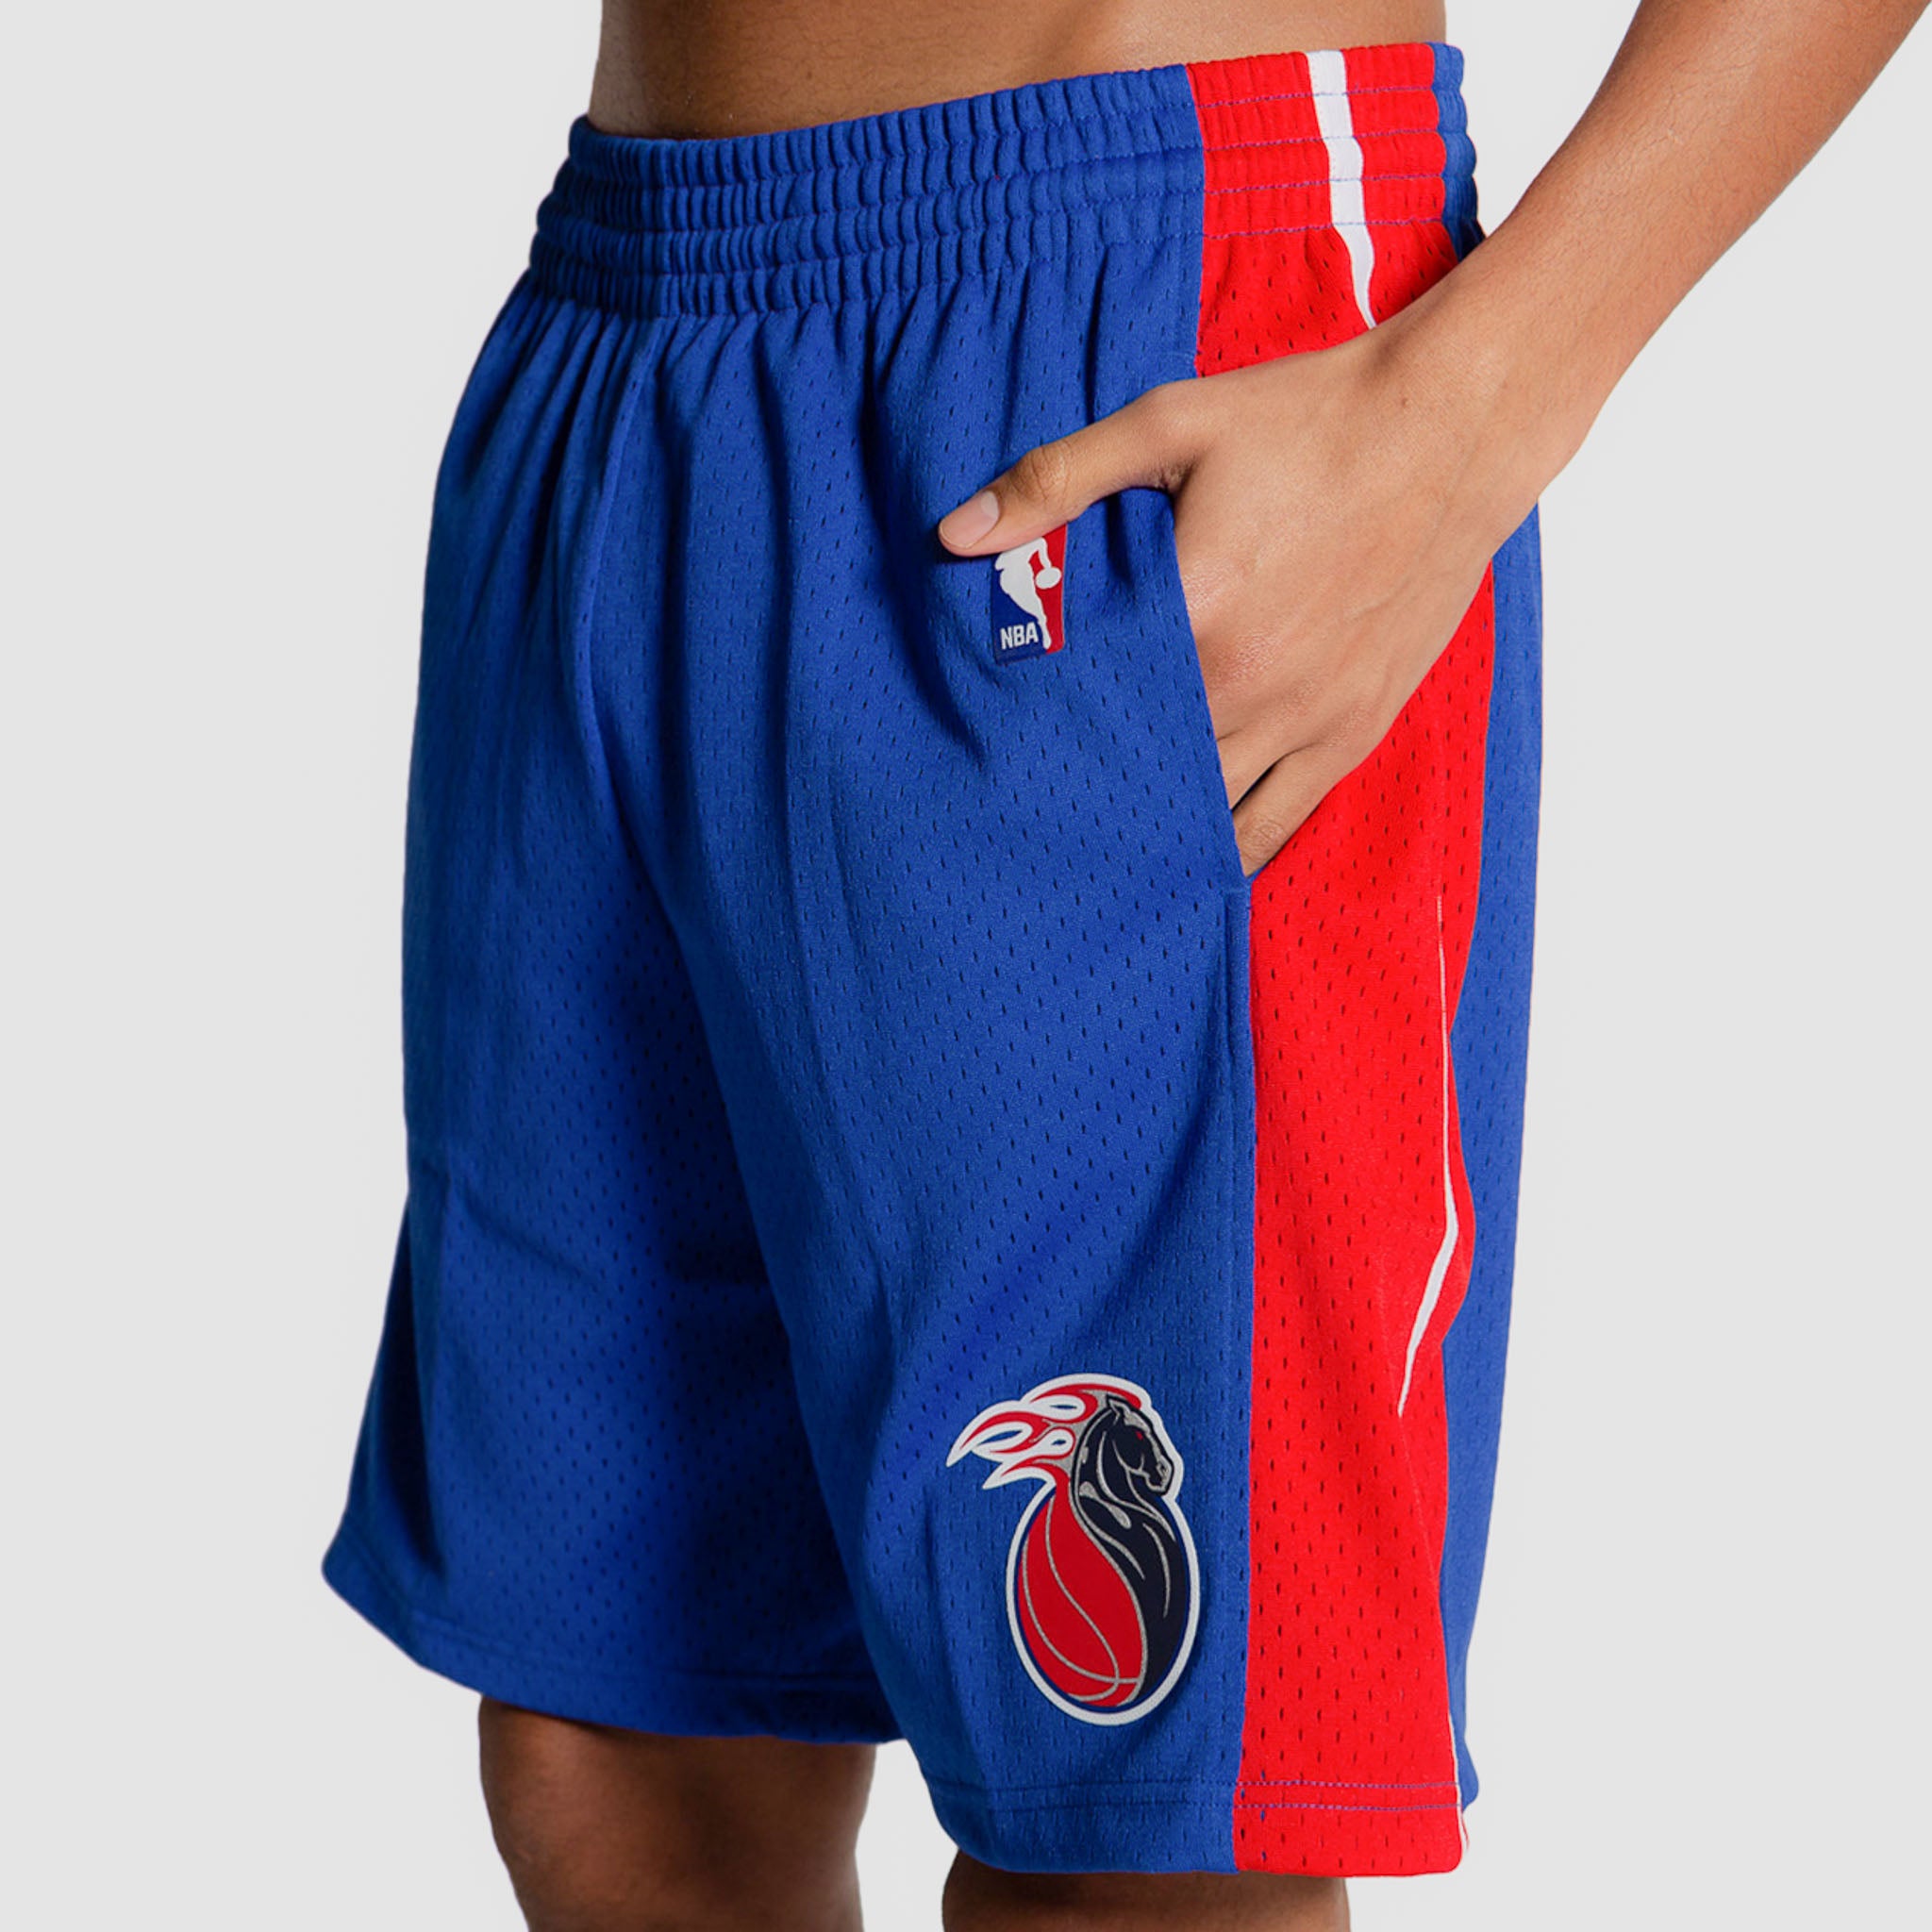 NBA Authentic Pro Cut DETROIT PISTONS shorts Adidas CHROME Uniforms